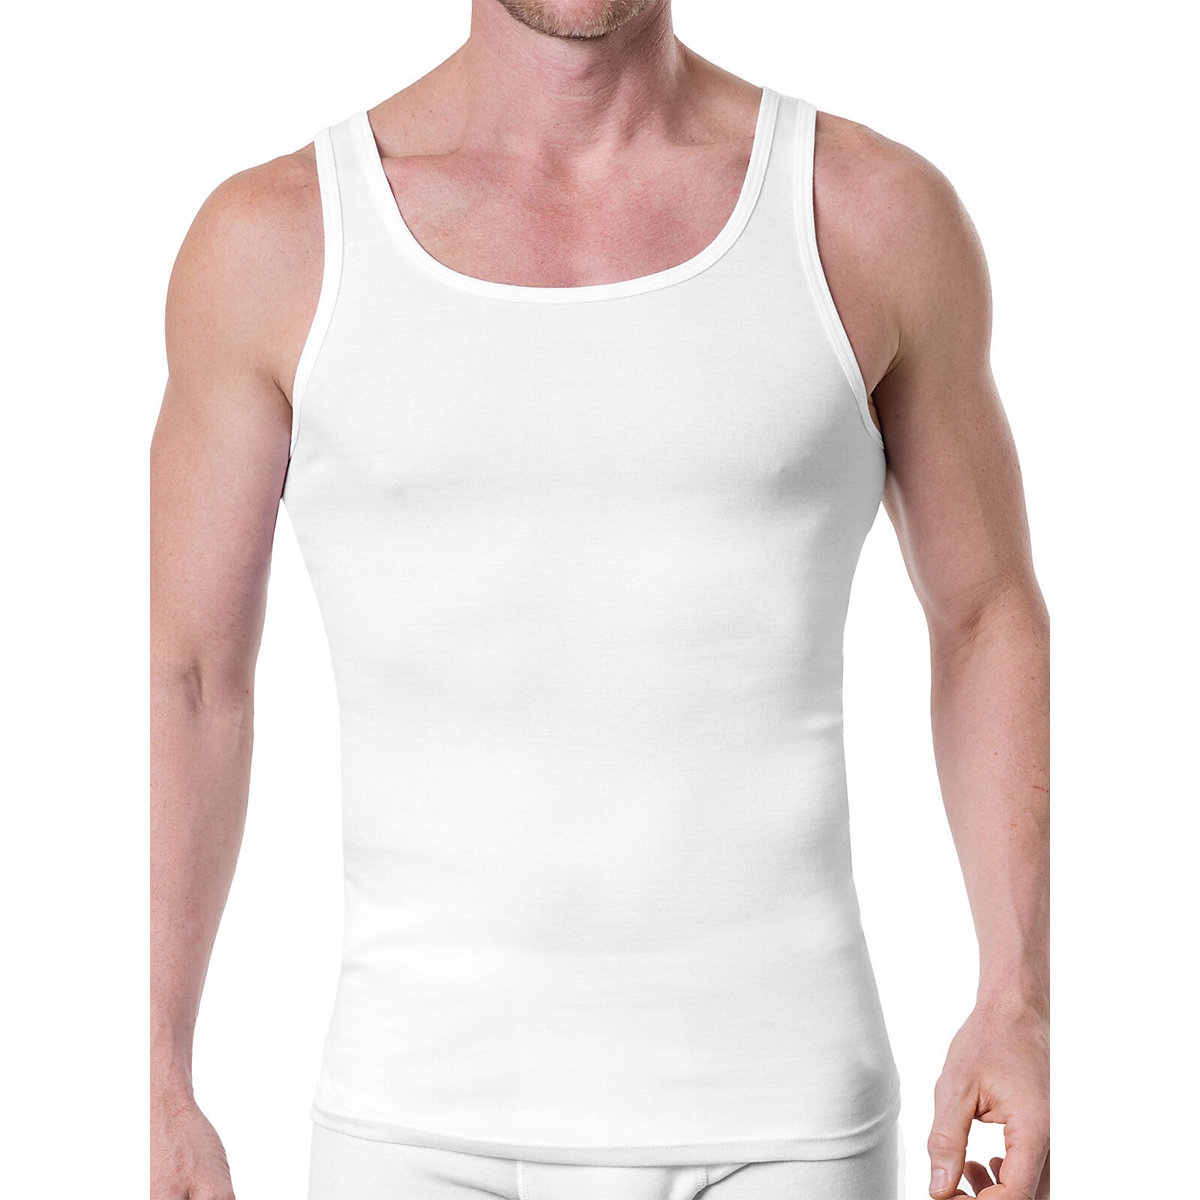 Kumpf Body Fashion 8er Sparpack Herren Unterhemd Bio Cotton Unterhemden schwarz/weiß